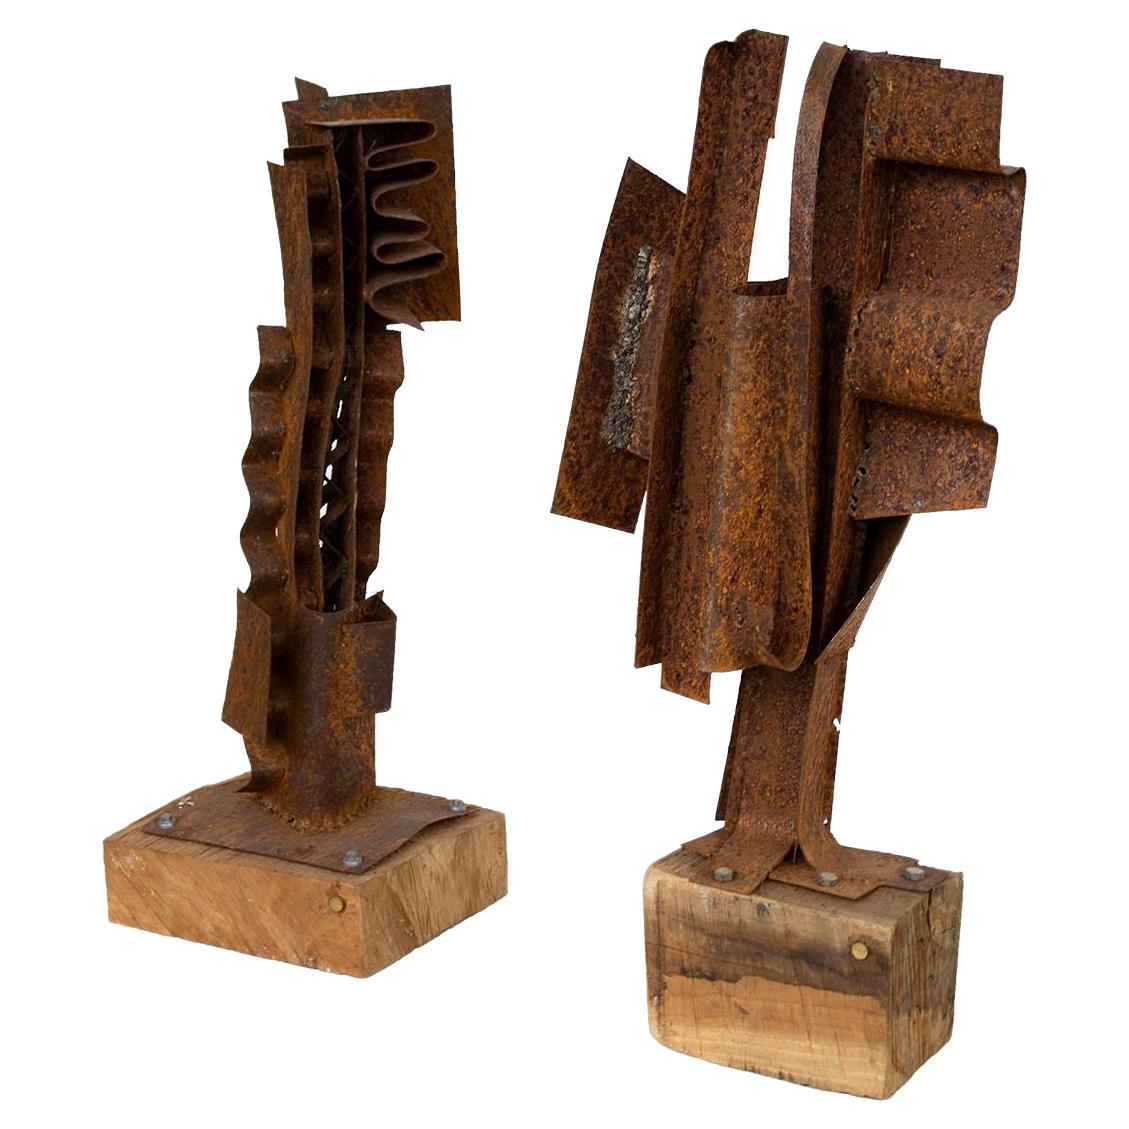 Pair of Handmade Sculptures by American Artist PKW